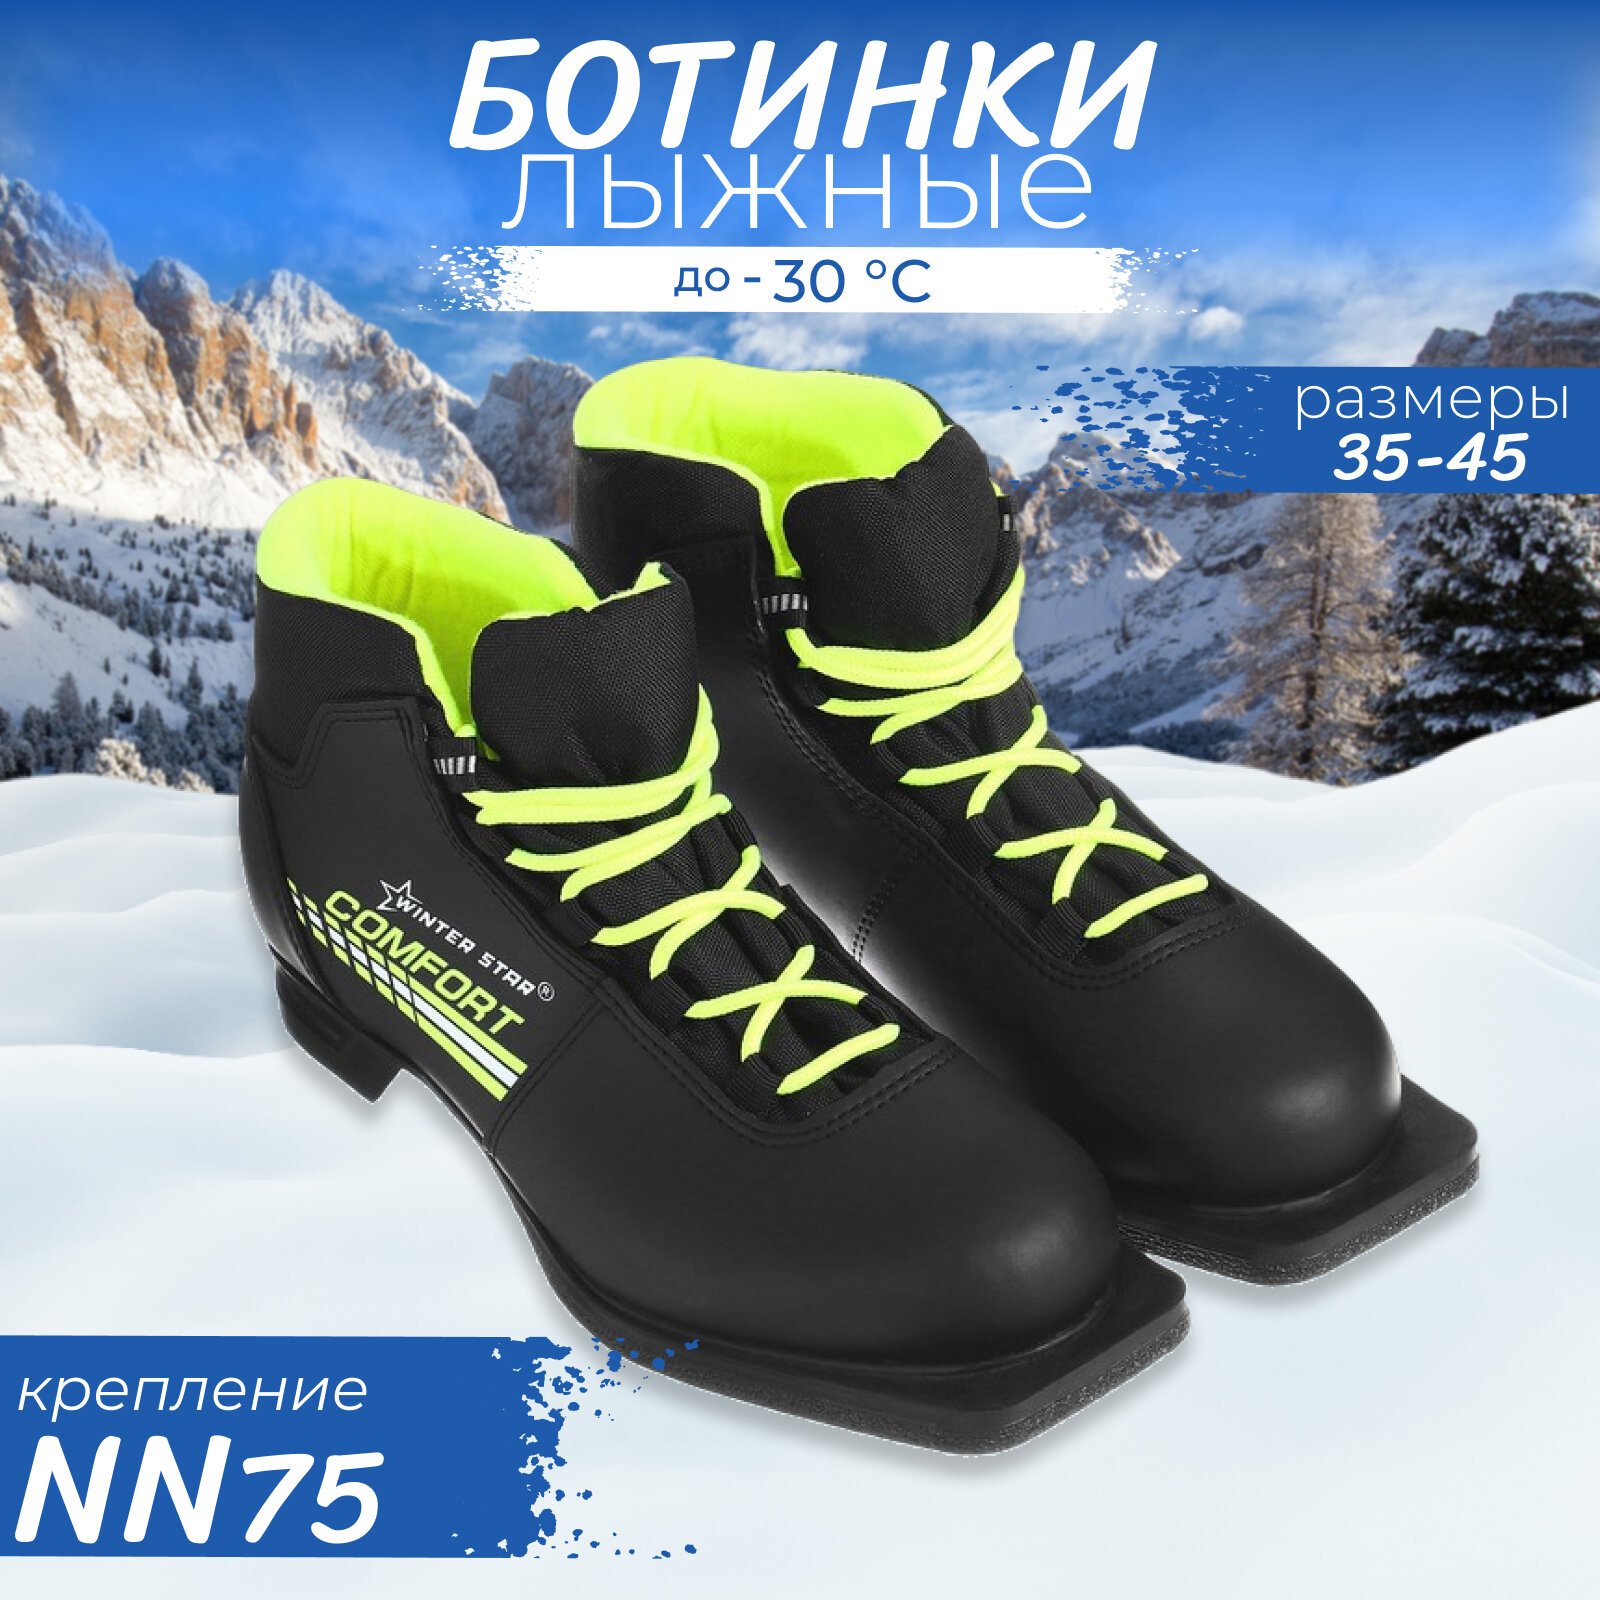 Ботинки лыжные Winter Star comfort, NN75, размер 44, цвет чёрный, салатовый